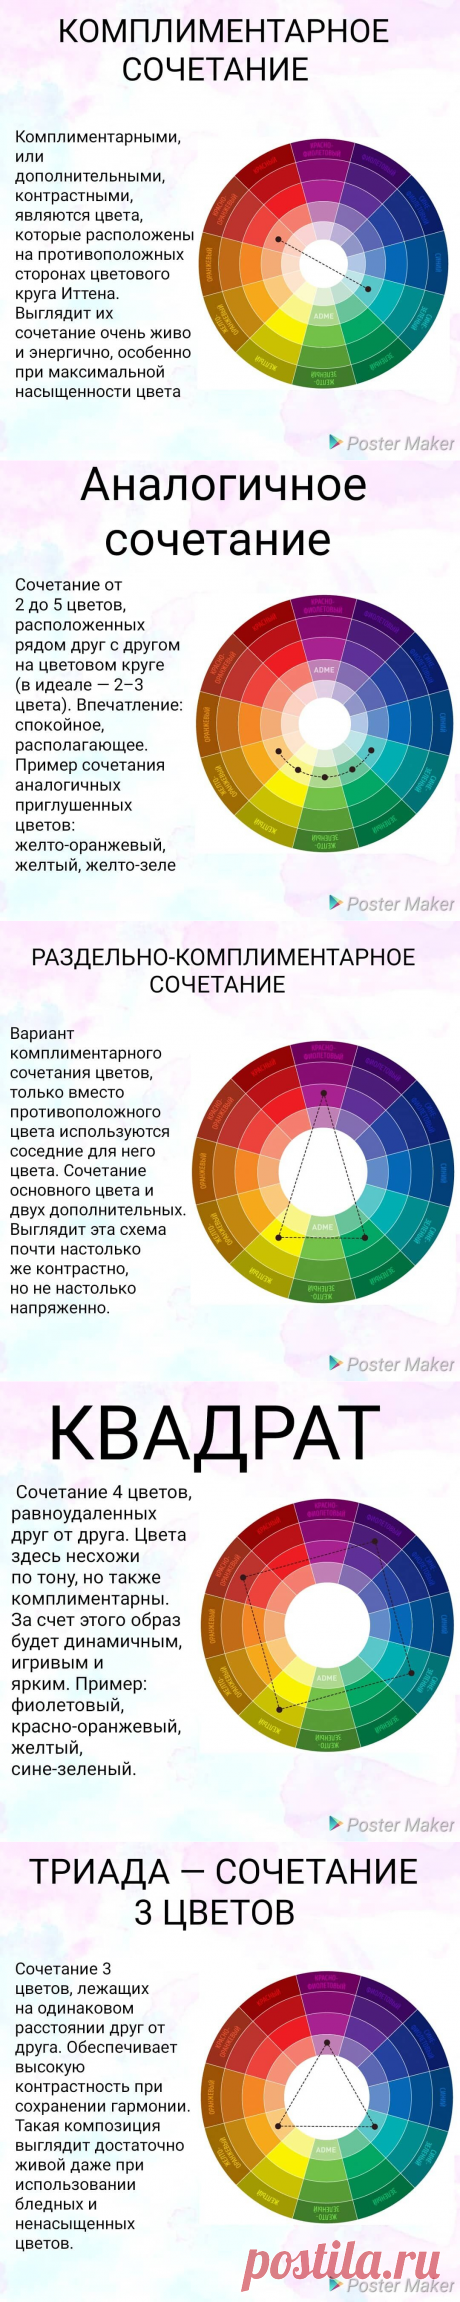 Как выбрать пряжу для полосатого свитера: сочетание оттенков | Студия Hand Made | Яндекс Дзен